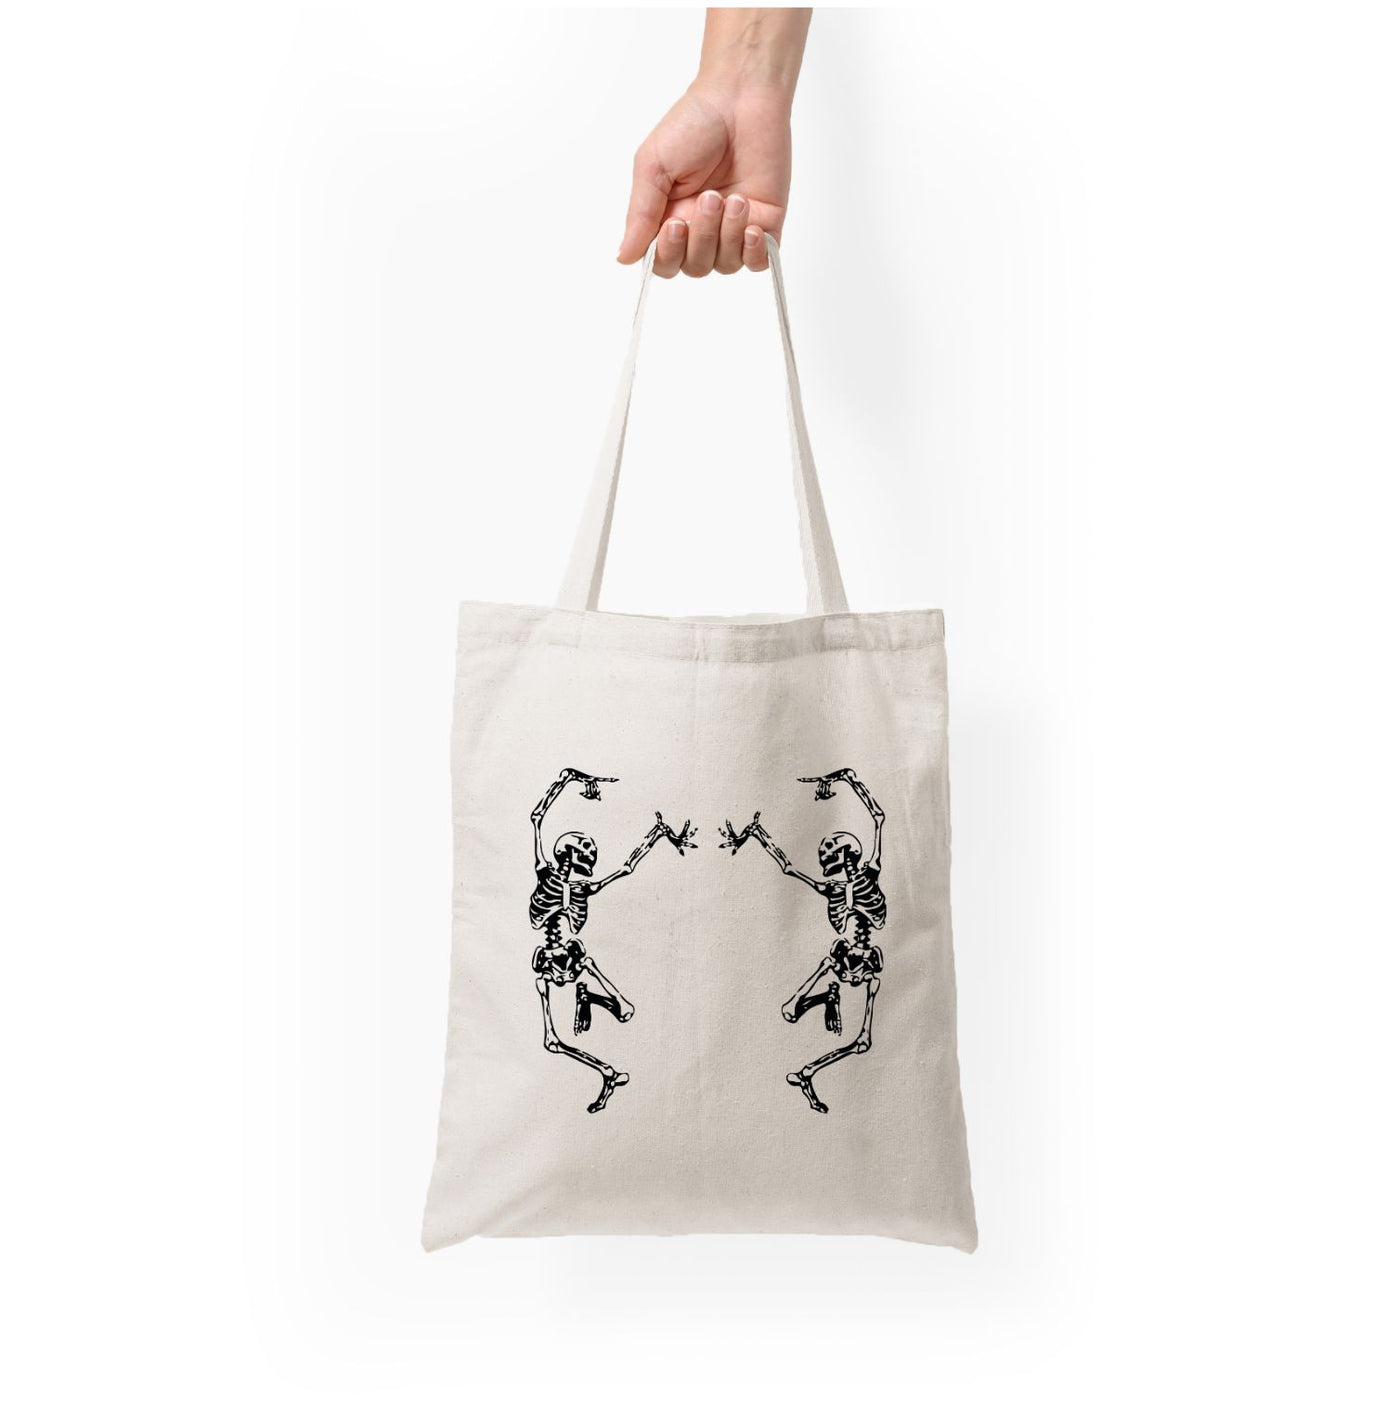 Dancing Skeletons - Halloween Tote Bag